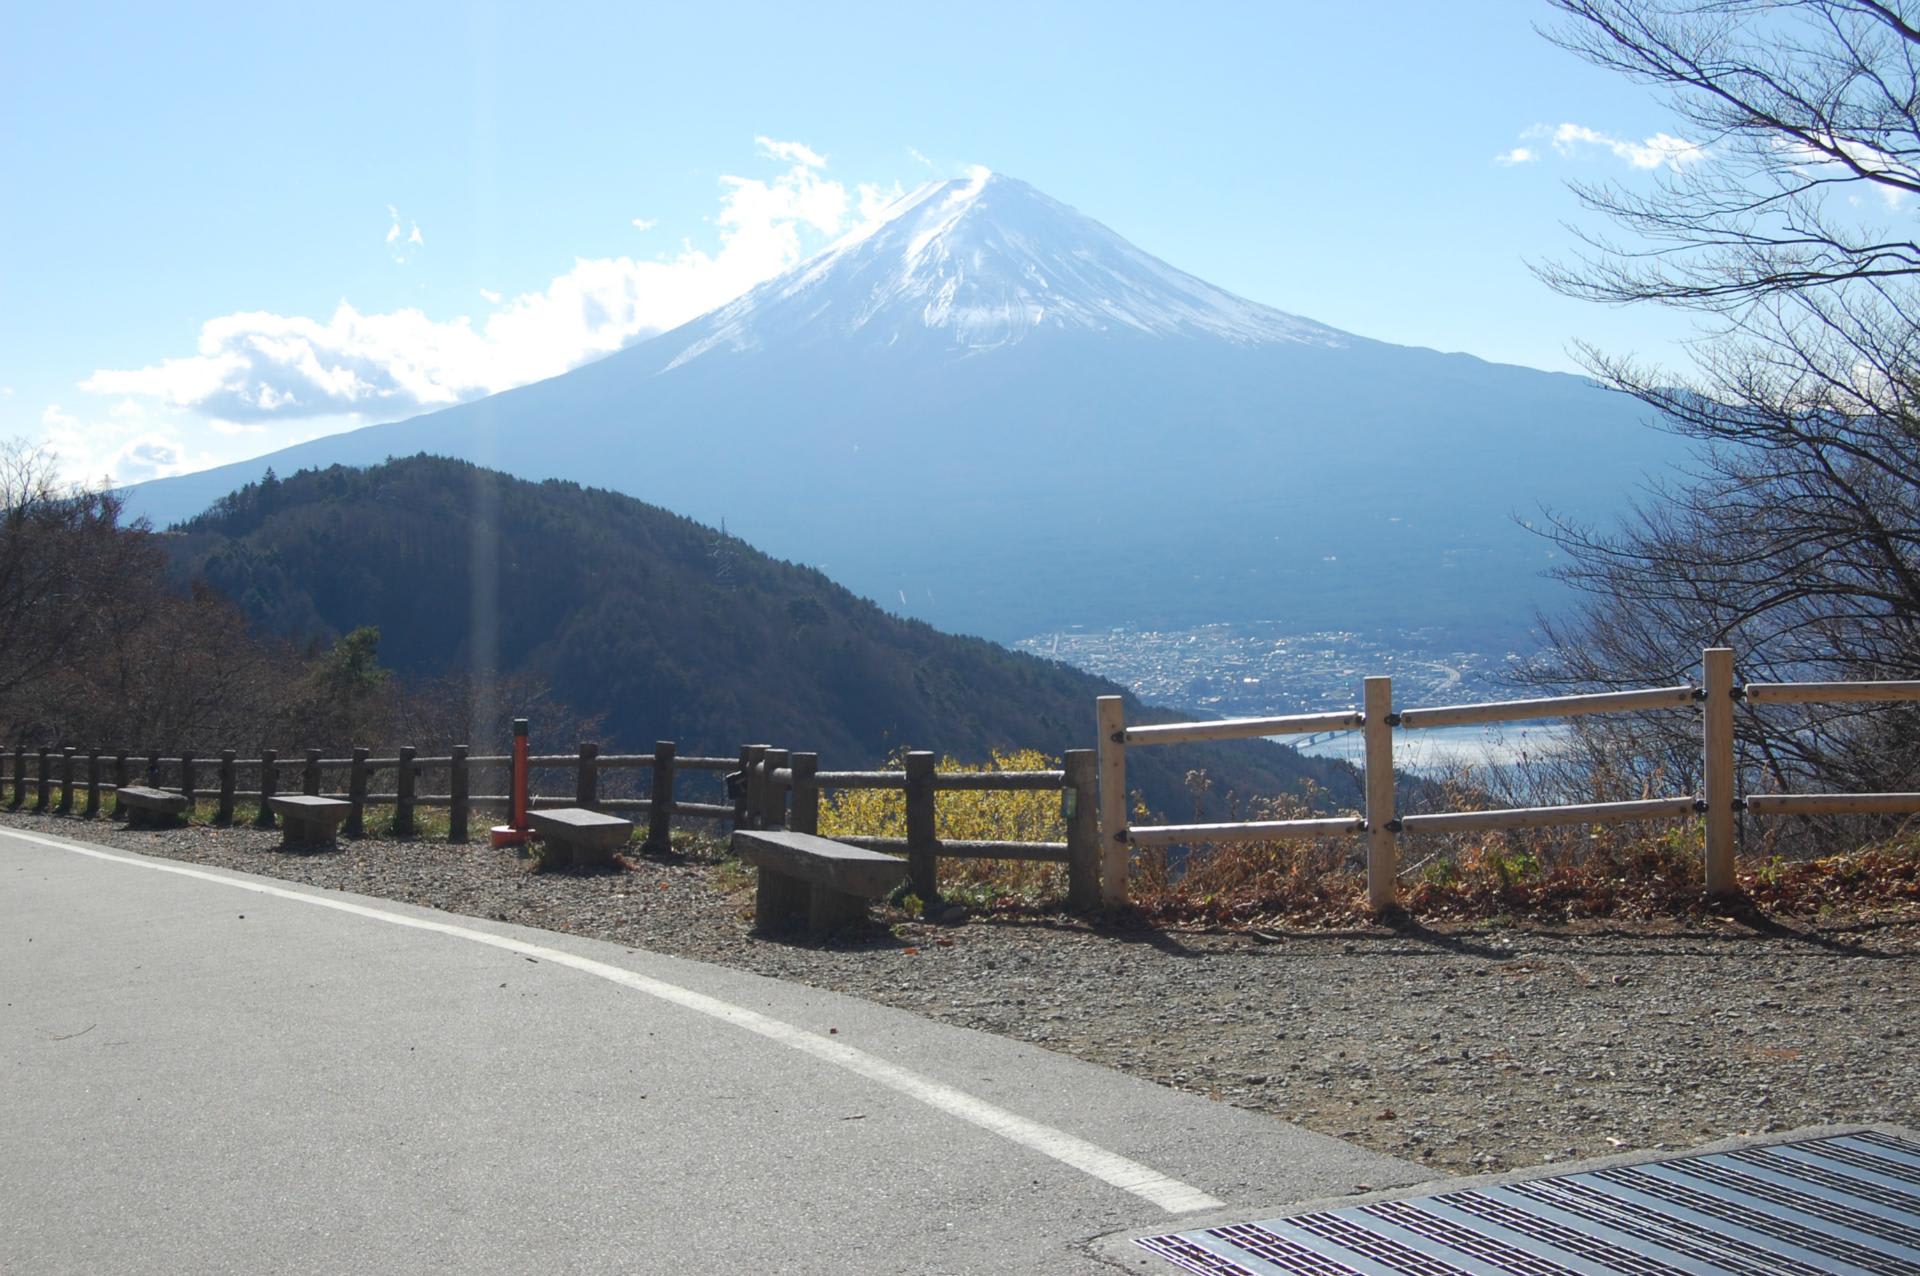 師走の富士山 富士五湖 御坂峠 天下茶屋の旅 オーロラ特急 ノスタルジック旅日記